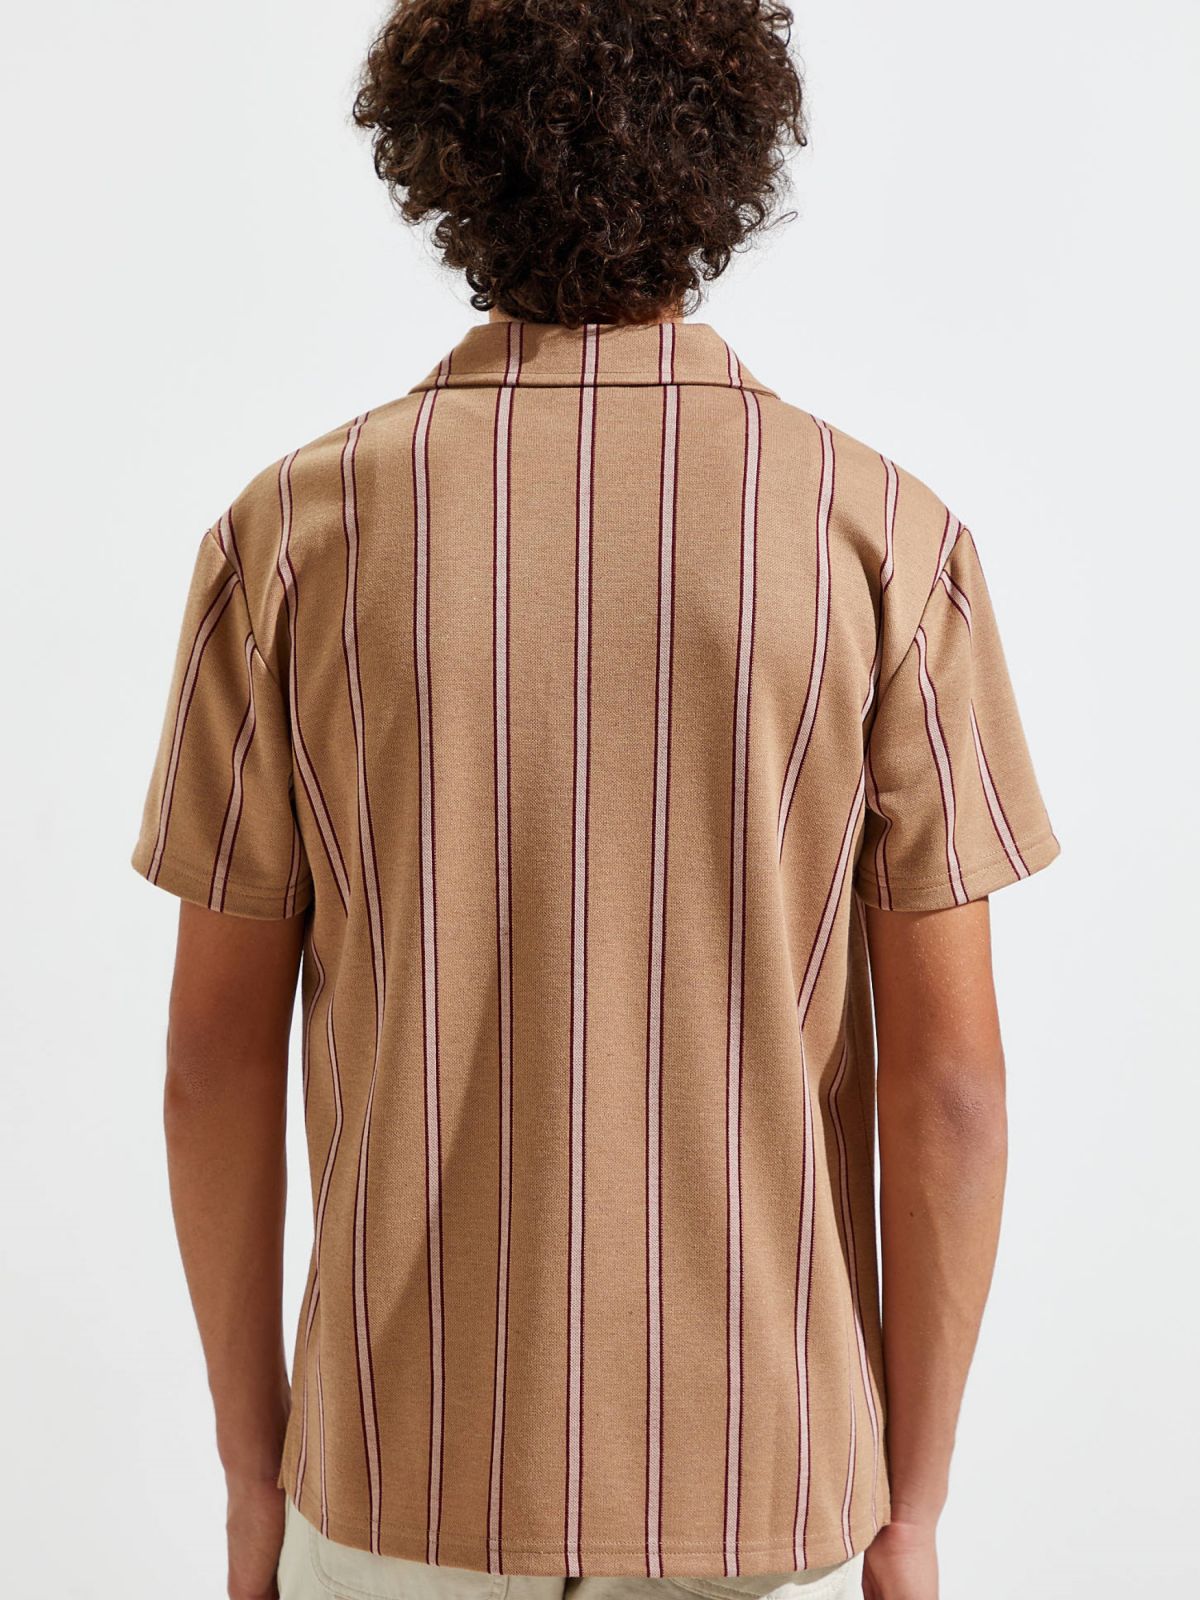  חולצת פולו בהדפס פסים עם כיס UO של URBAN OUTFITTERS